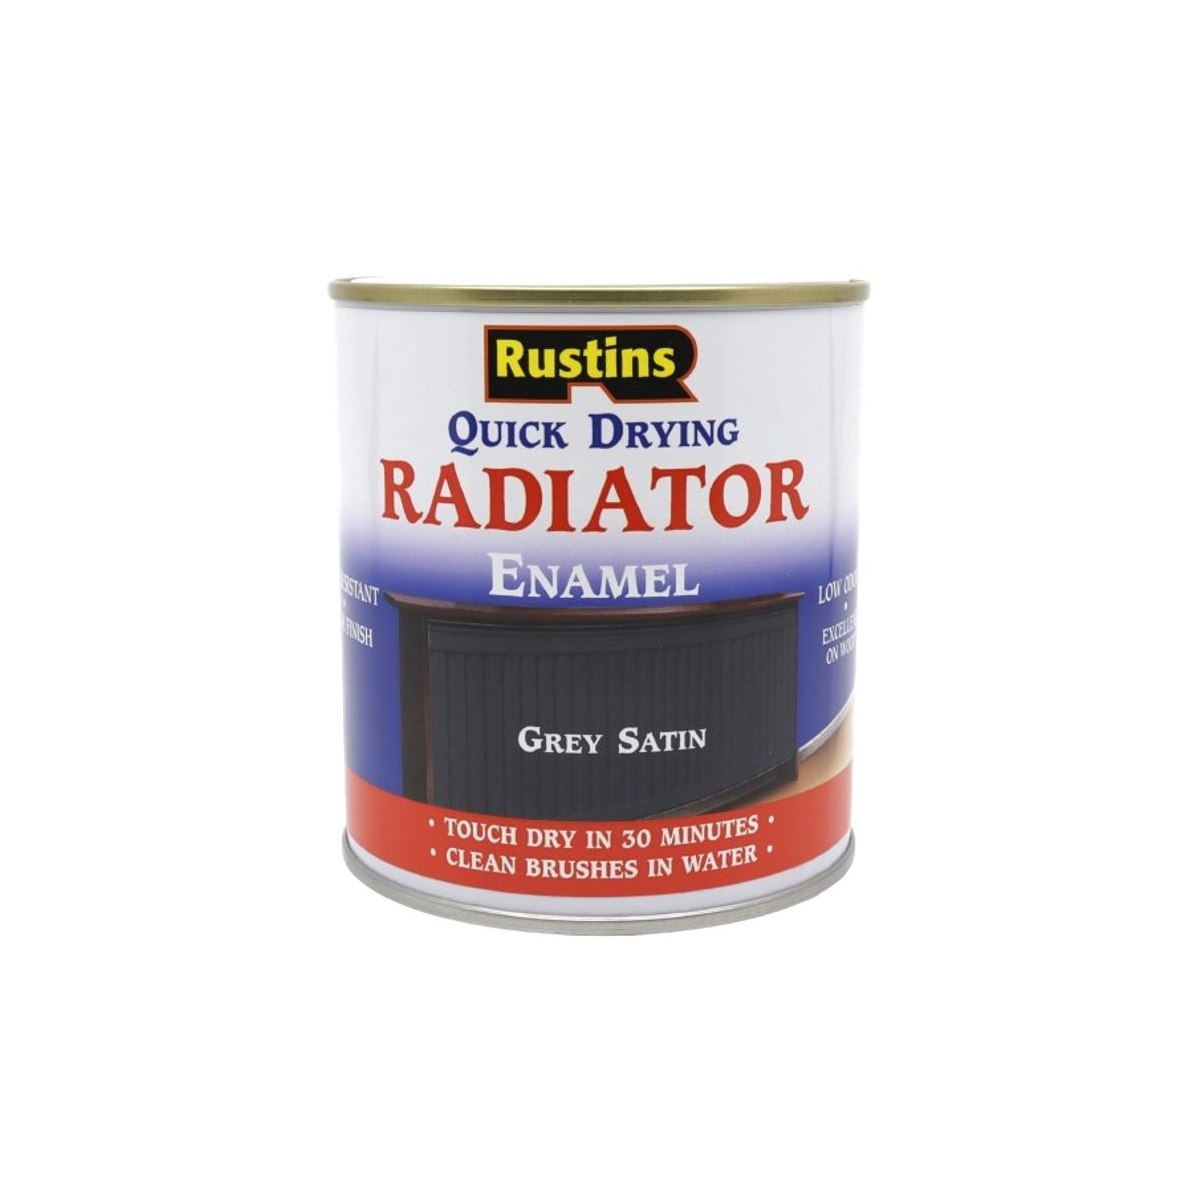 Rustins Quick Drying Radiator Enamel Grey Satin 500ml